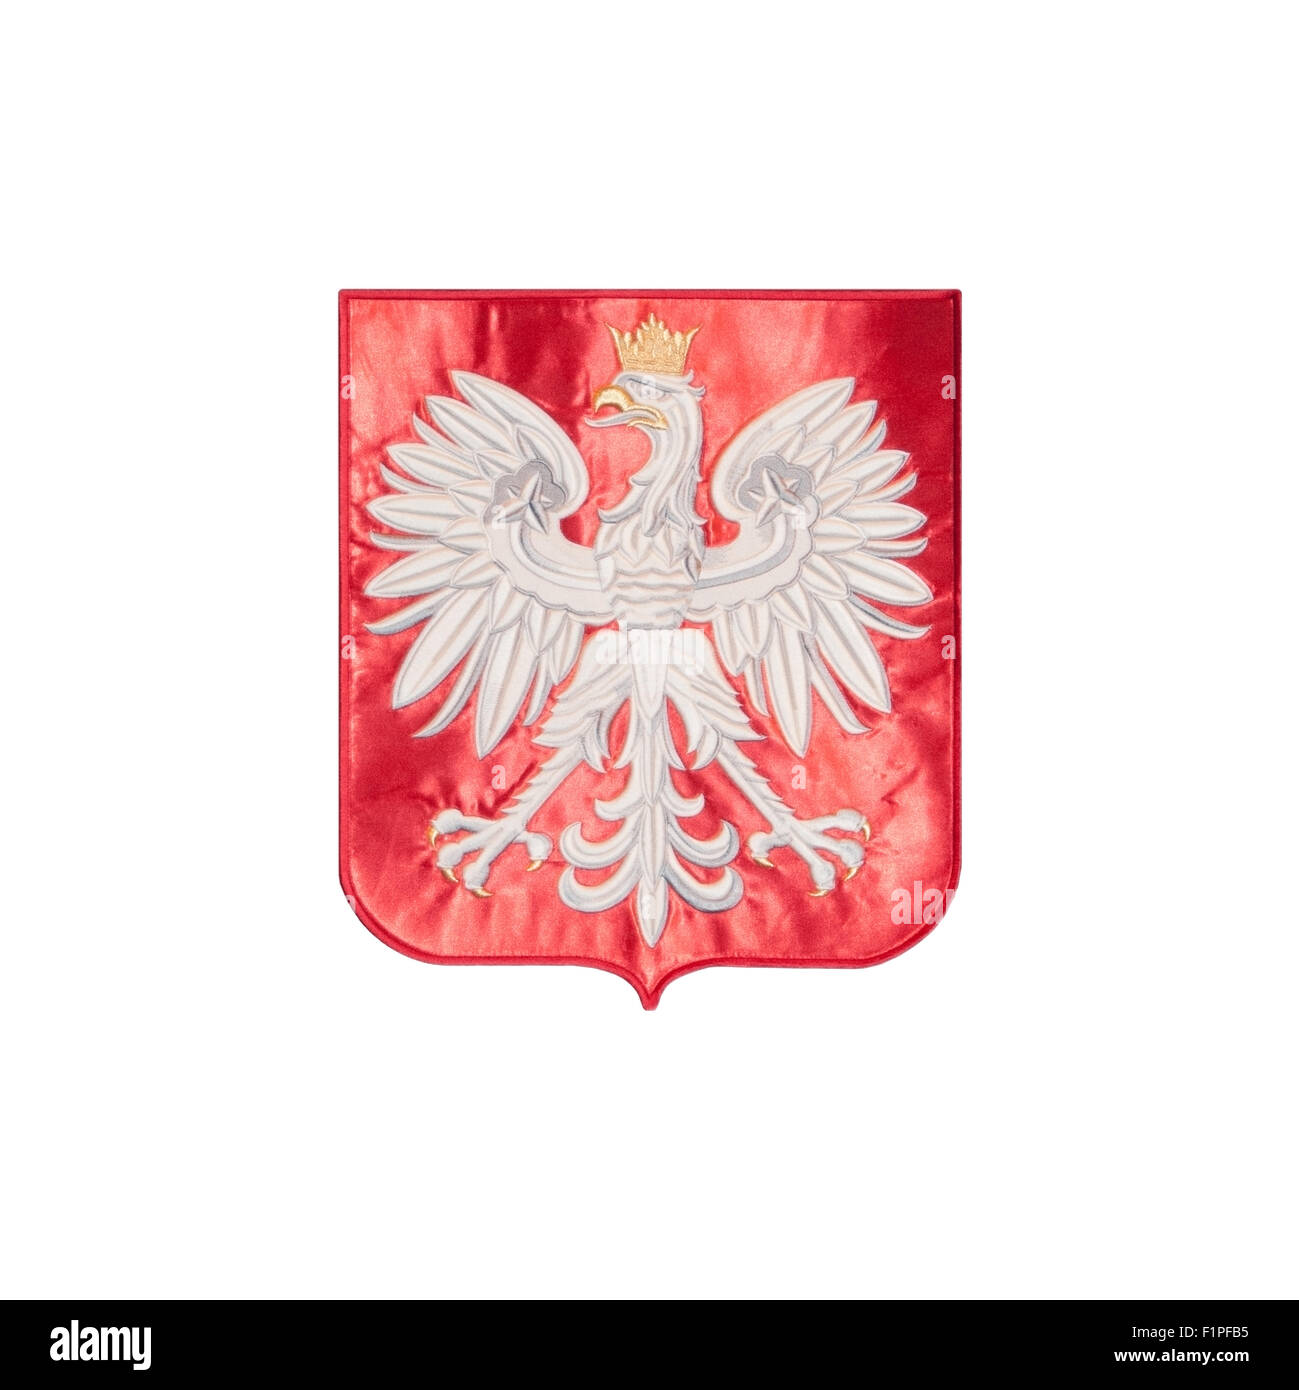 L'emblème de l'aigle polonais, avec une couronne jaune, brodé sur un tissu de velours rouge, Polska, polonais, européen, de l'UNION EUROPÉENNE Banque D'Images